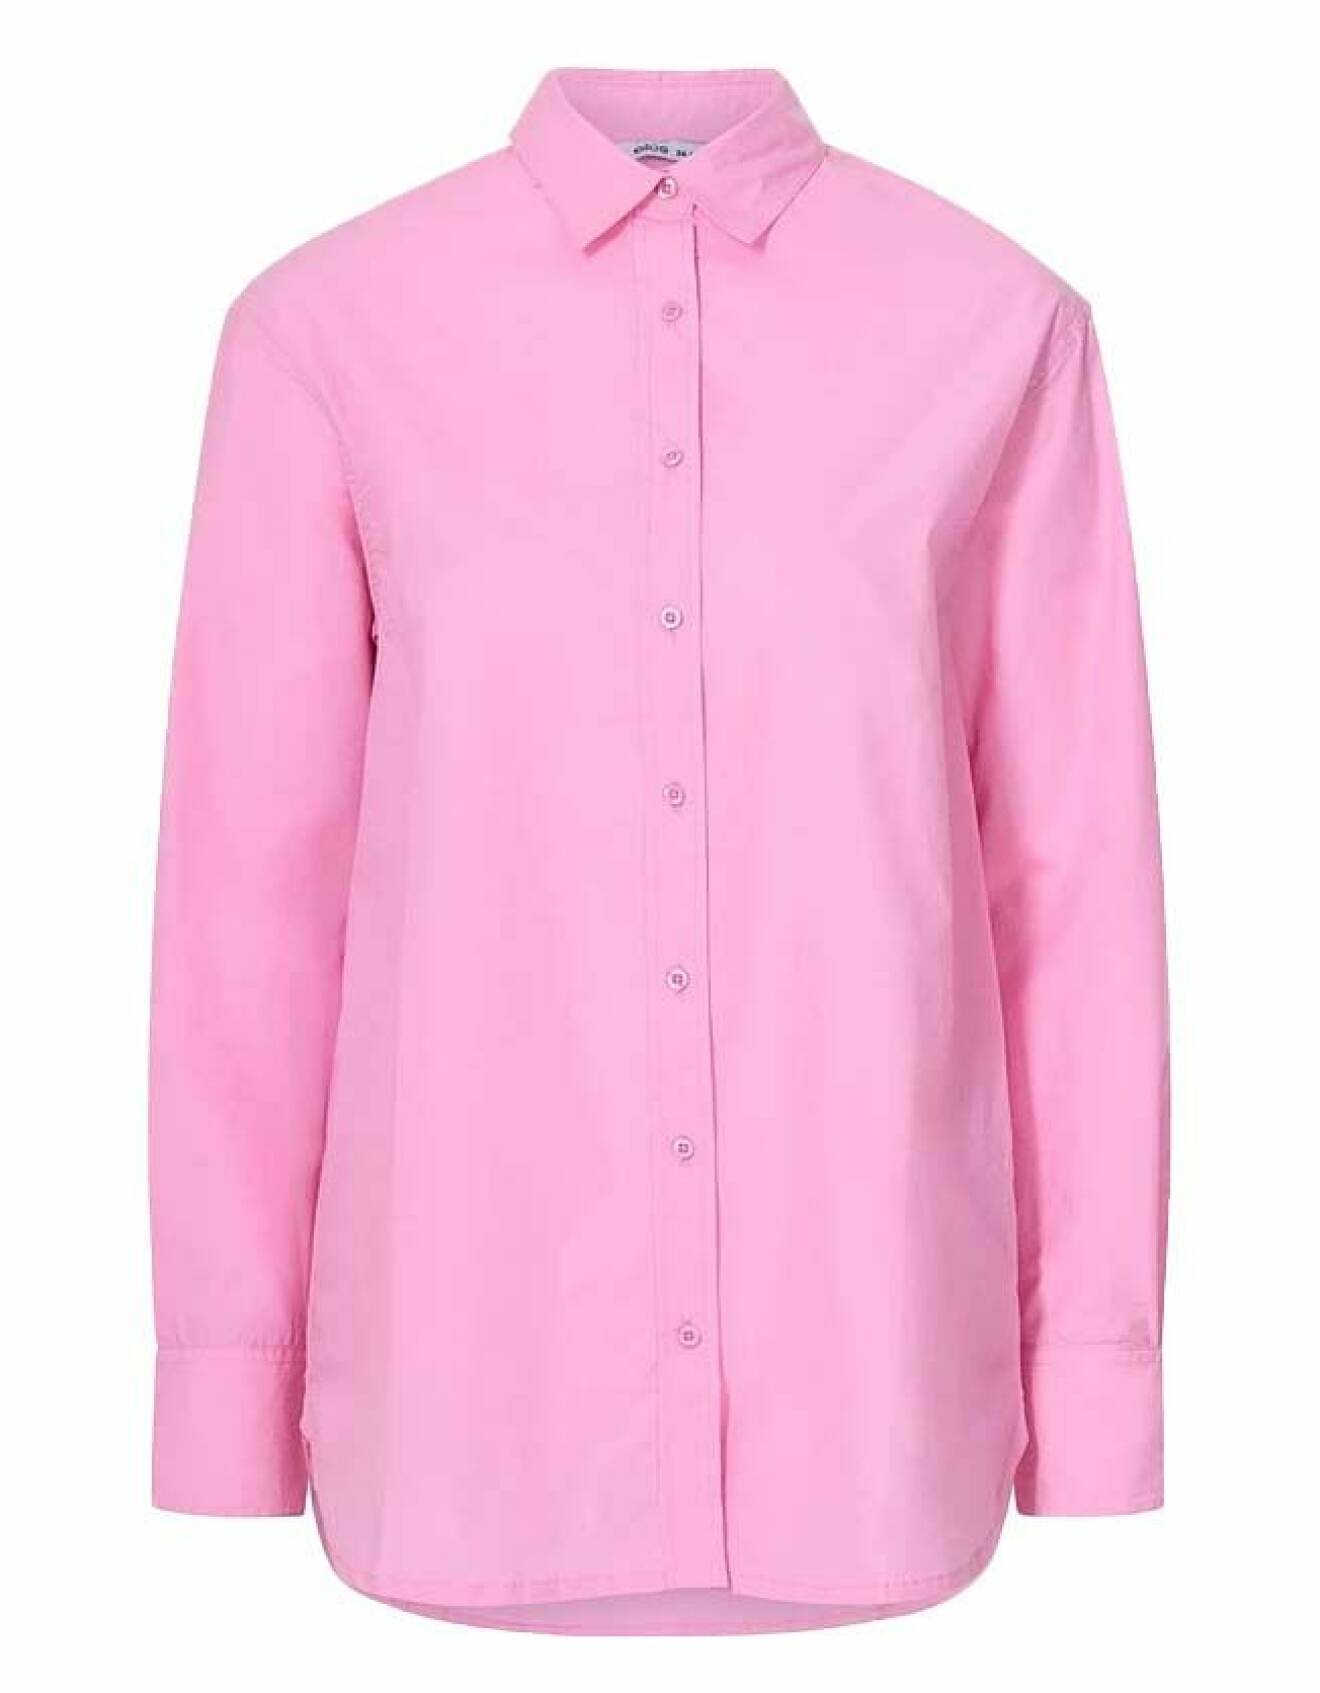 Rosa skjorta från Ellos.